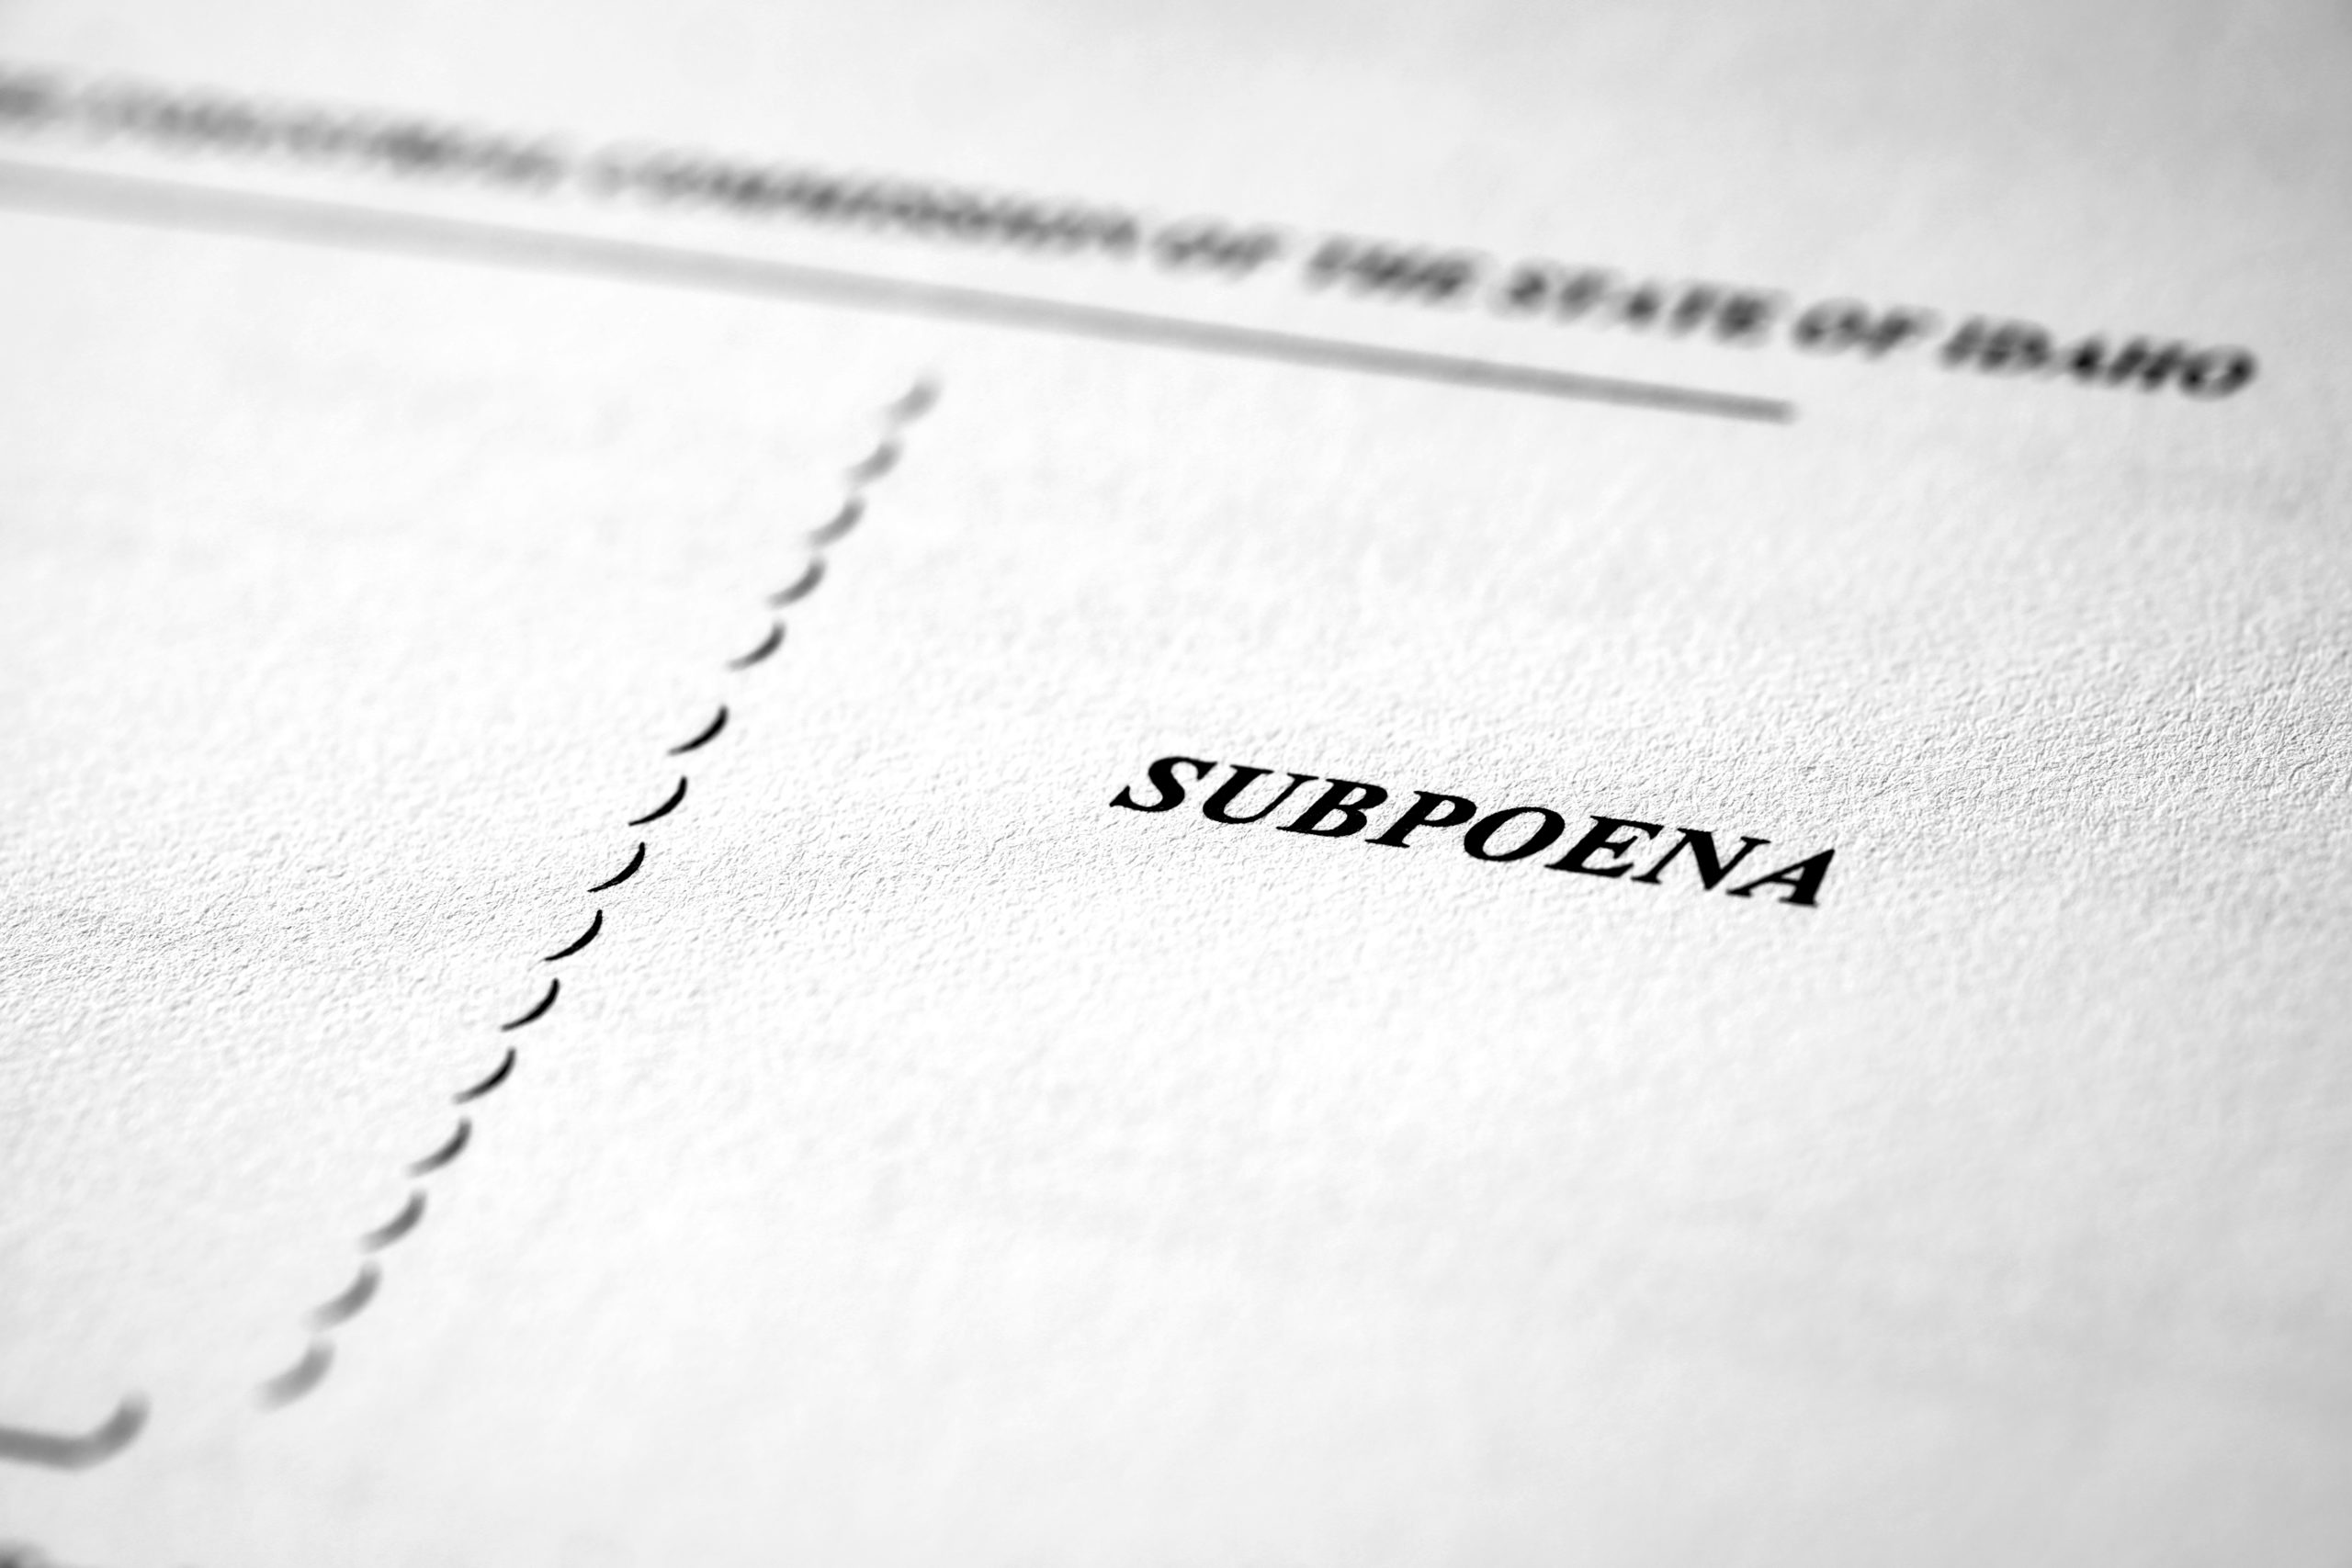 Subpoena Document